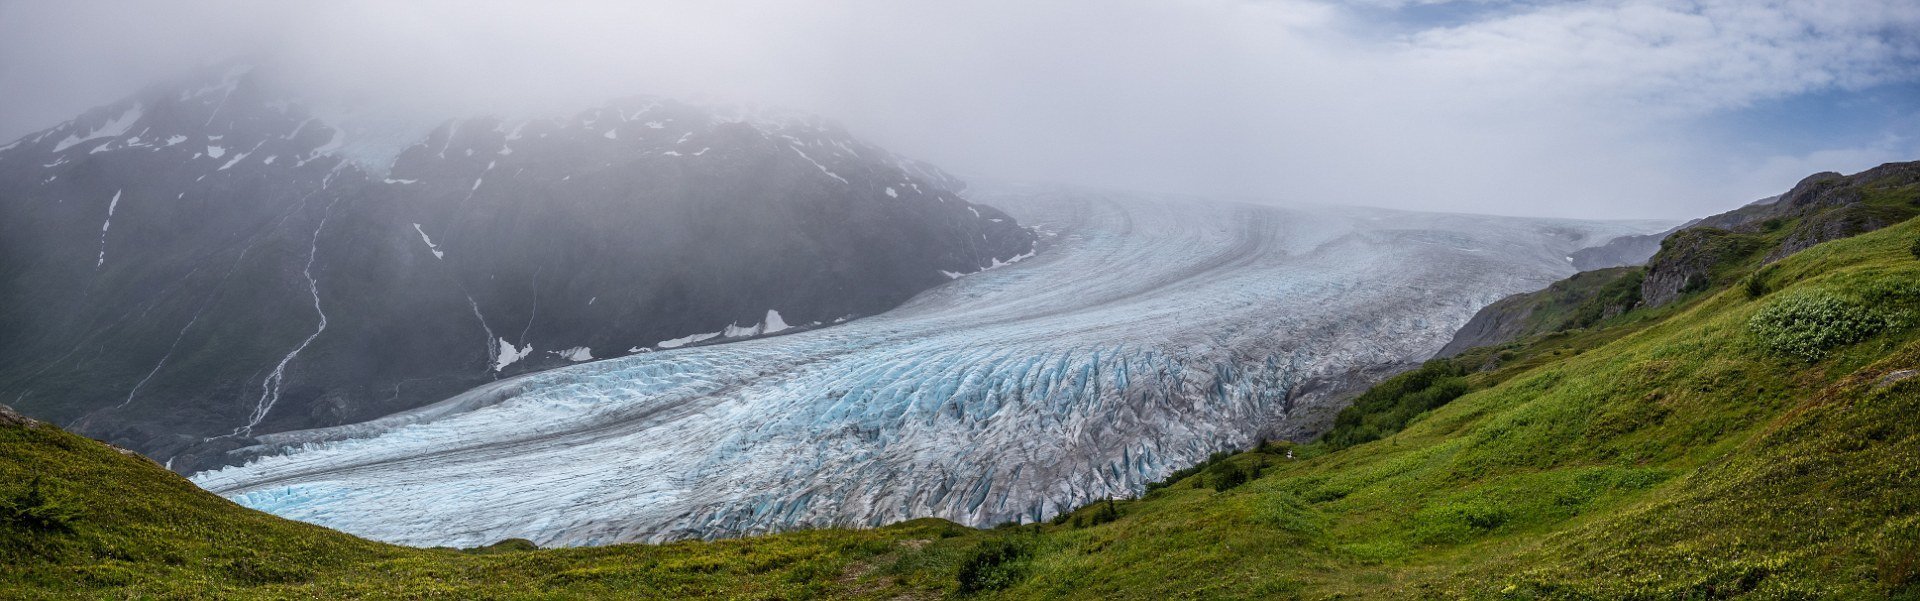 Ледник Экзит, национальный парк Кенай-Фьордс, Аляска